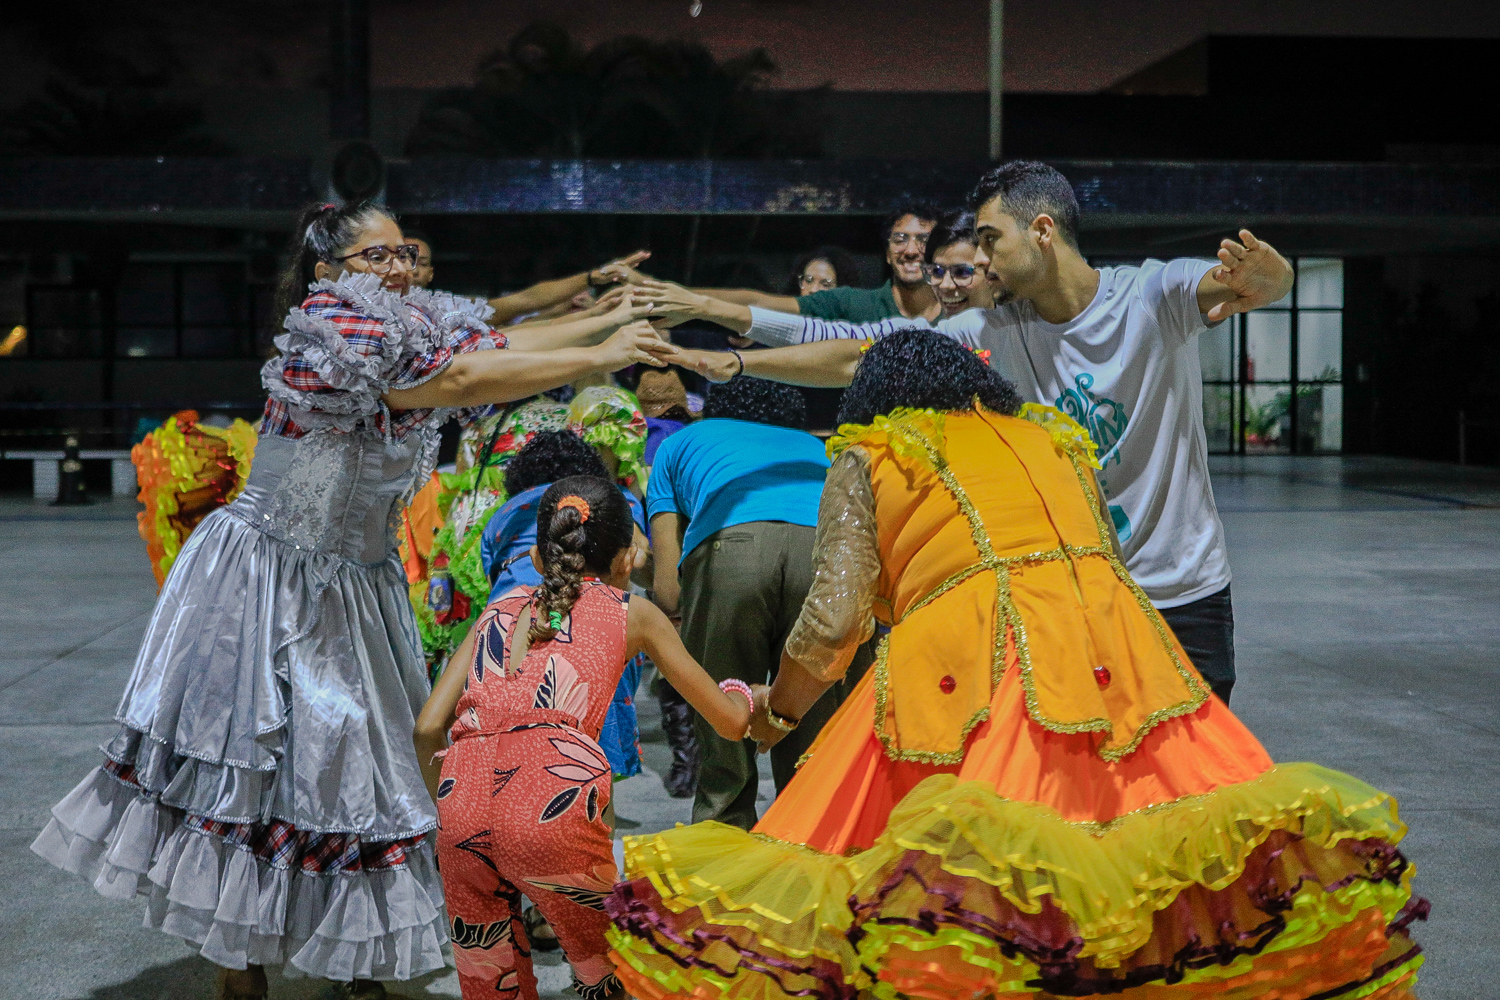 Oficina de danças juninas ensinou passos de dança para o público. (foto: Elisa Lemos/Ascom UFS)